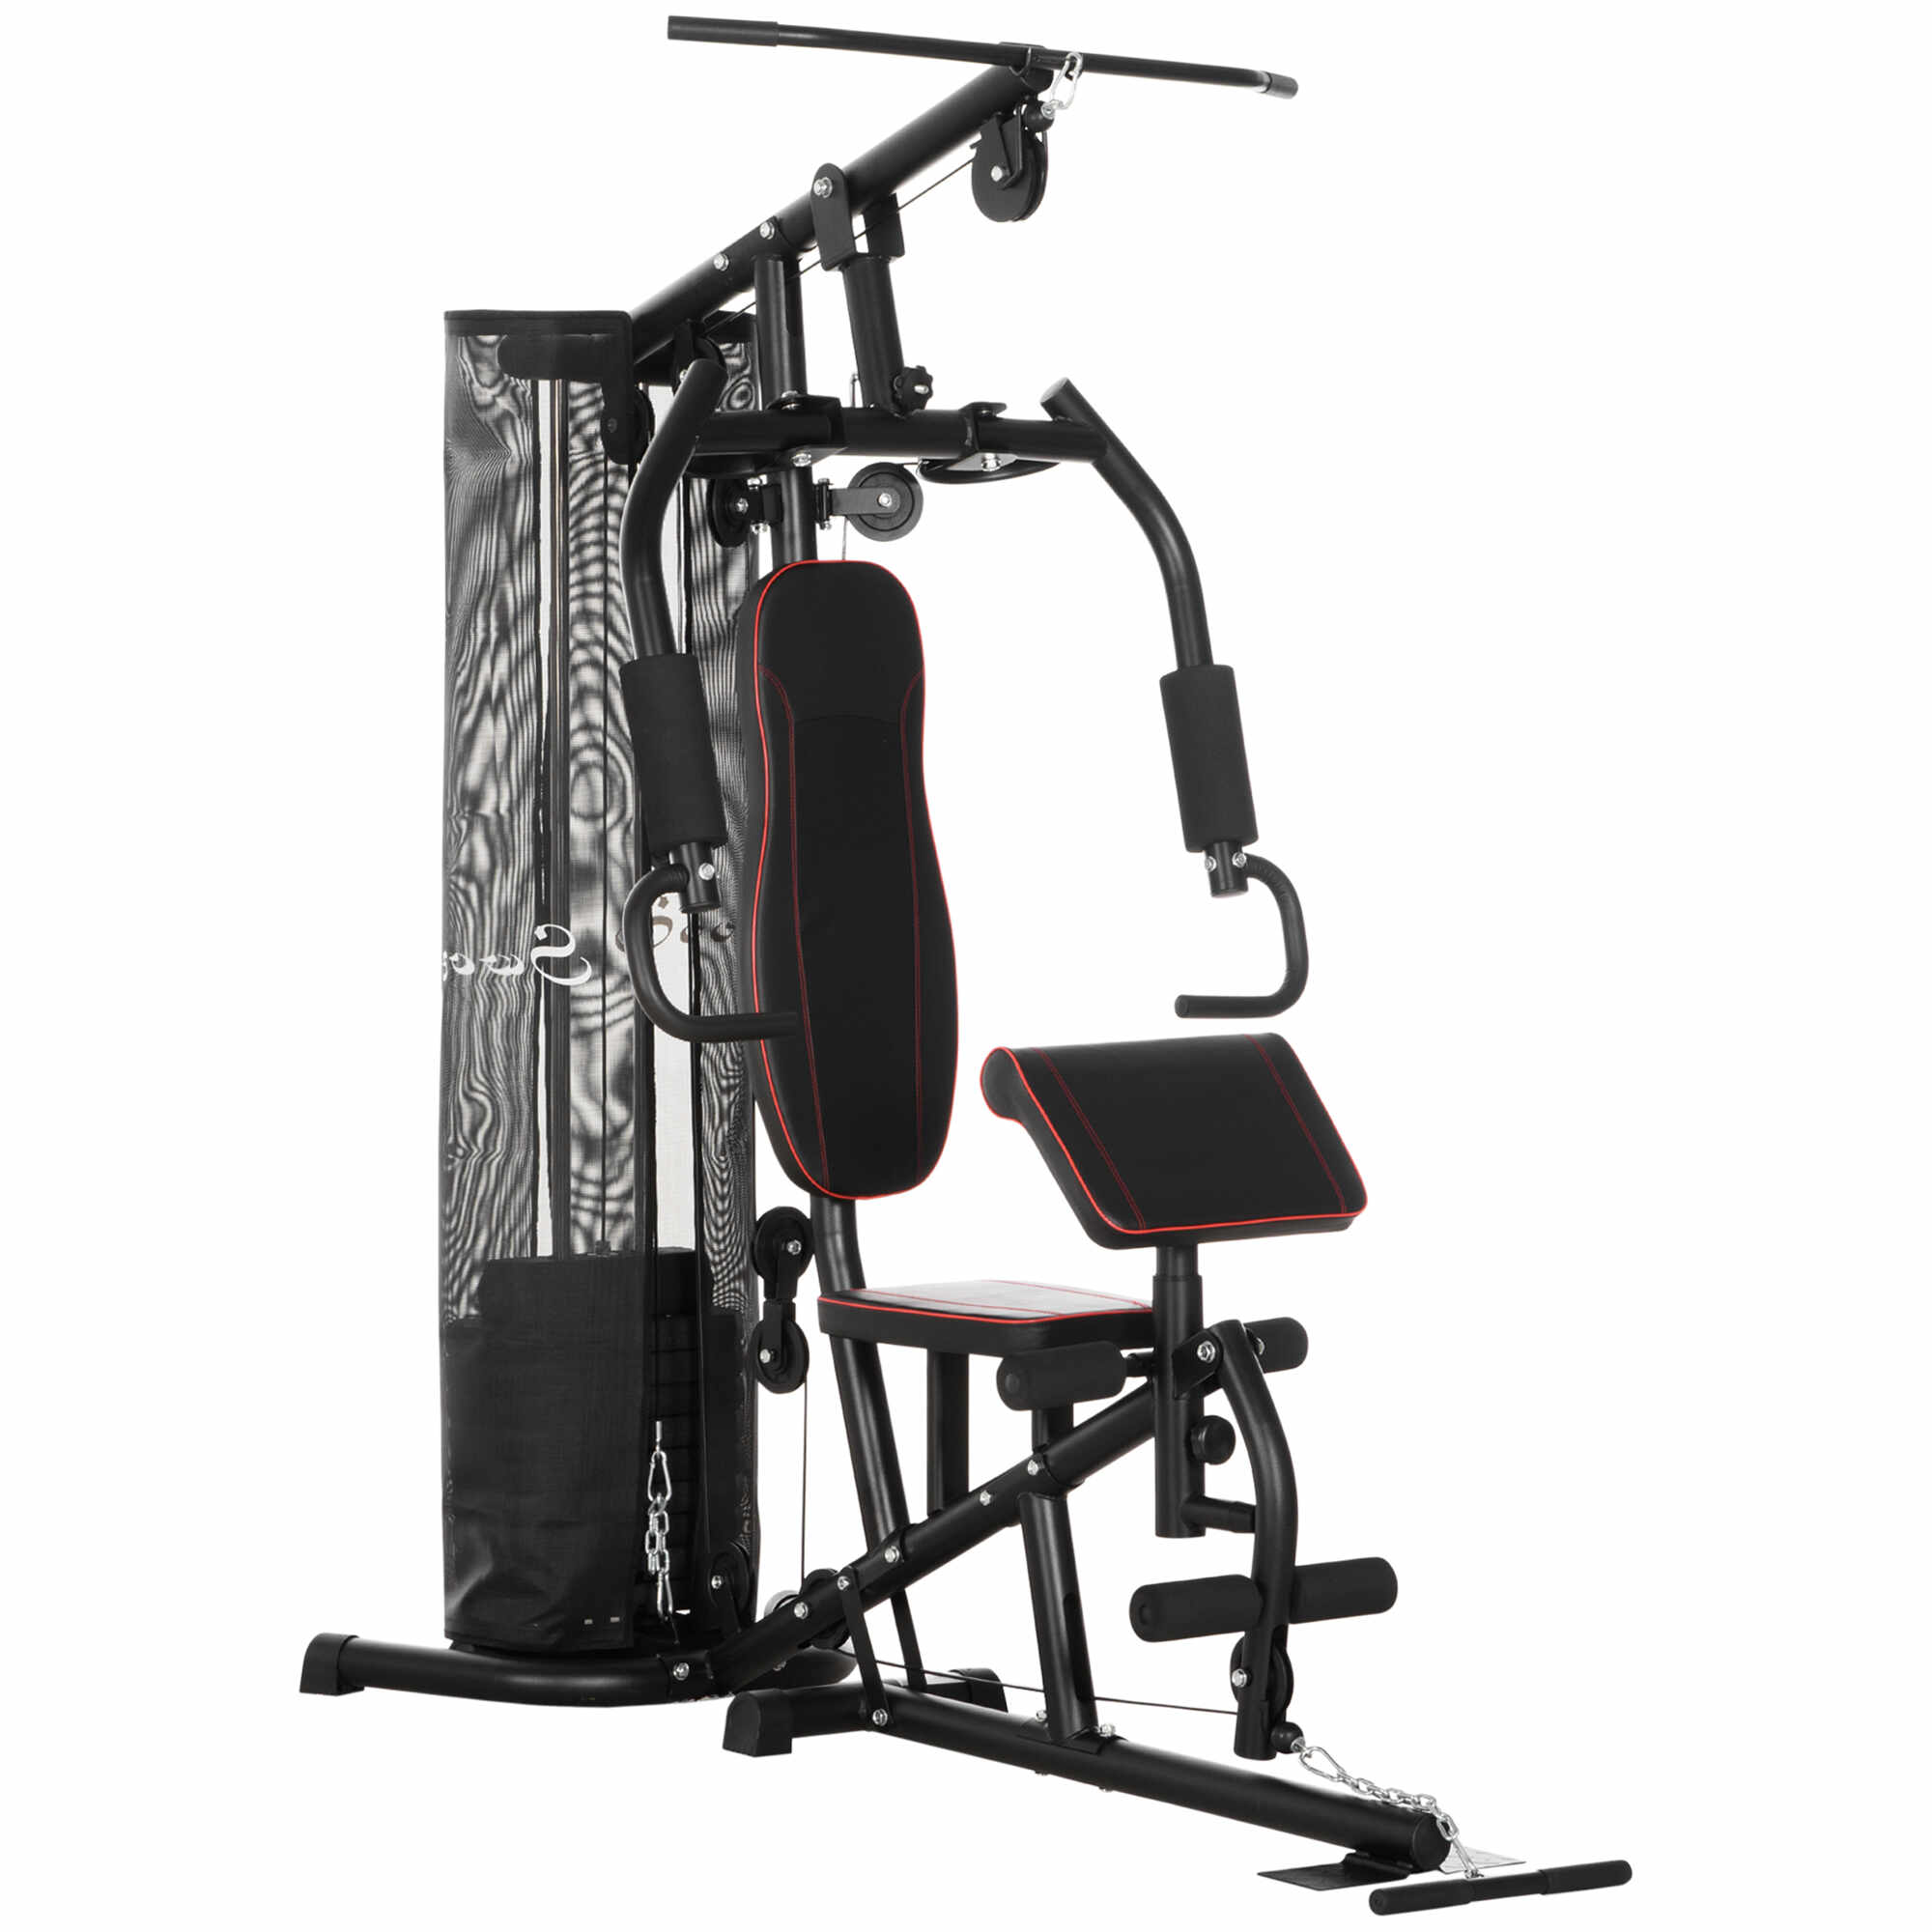 Statie de fitness HOMCOM cu greutati de otel de 4,5 kg, aparatul de gimnastica multifunctional pentru antrenament acasa, 170x104x205cm, negru